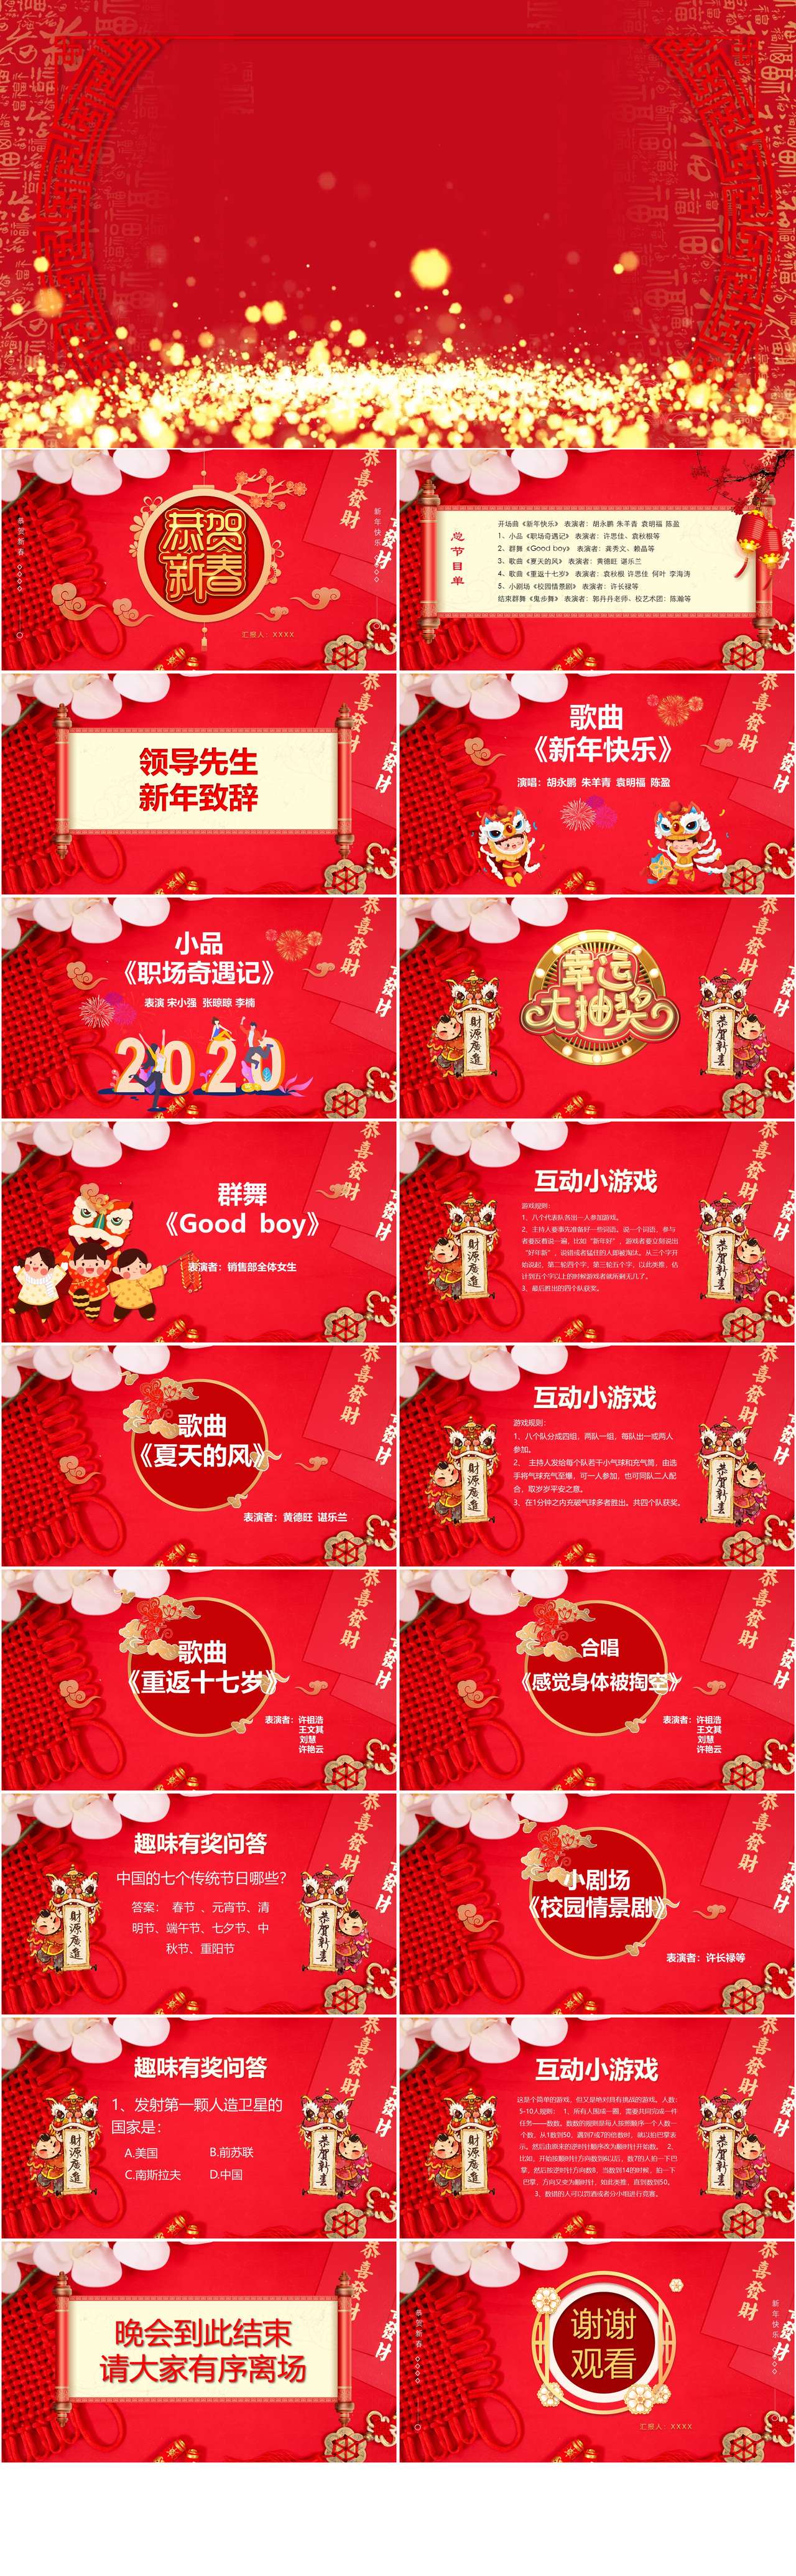 中国风鼠年企业联欢晚会节目单PPT模板